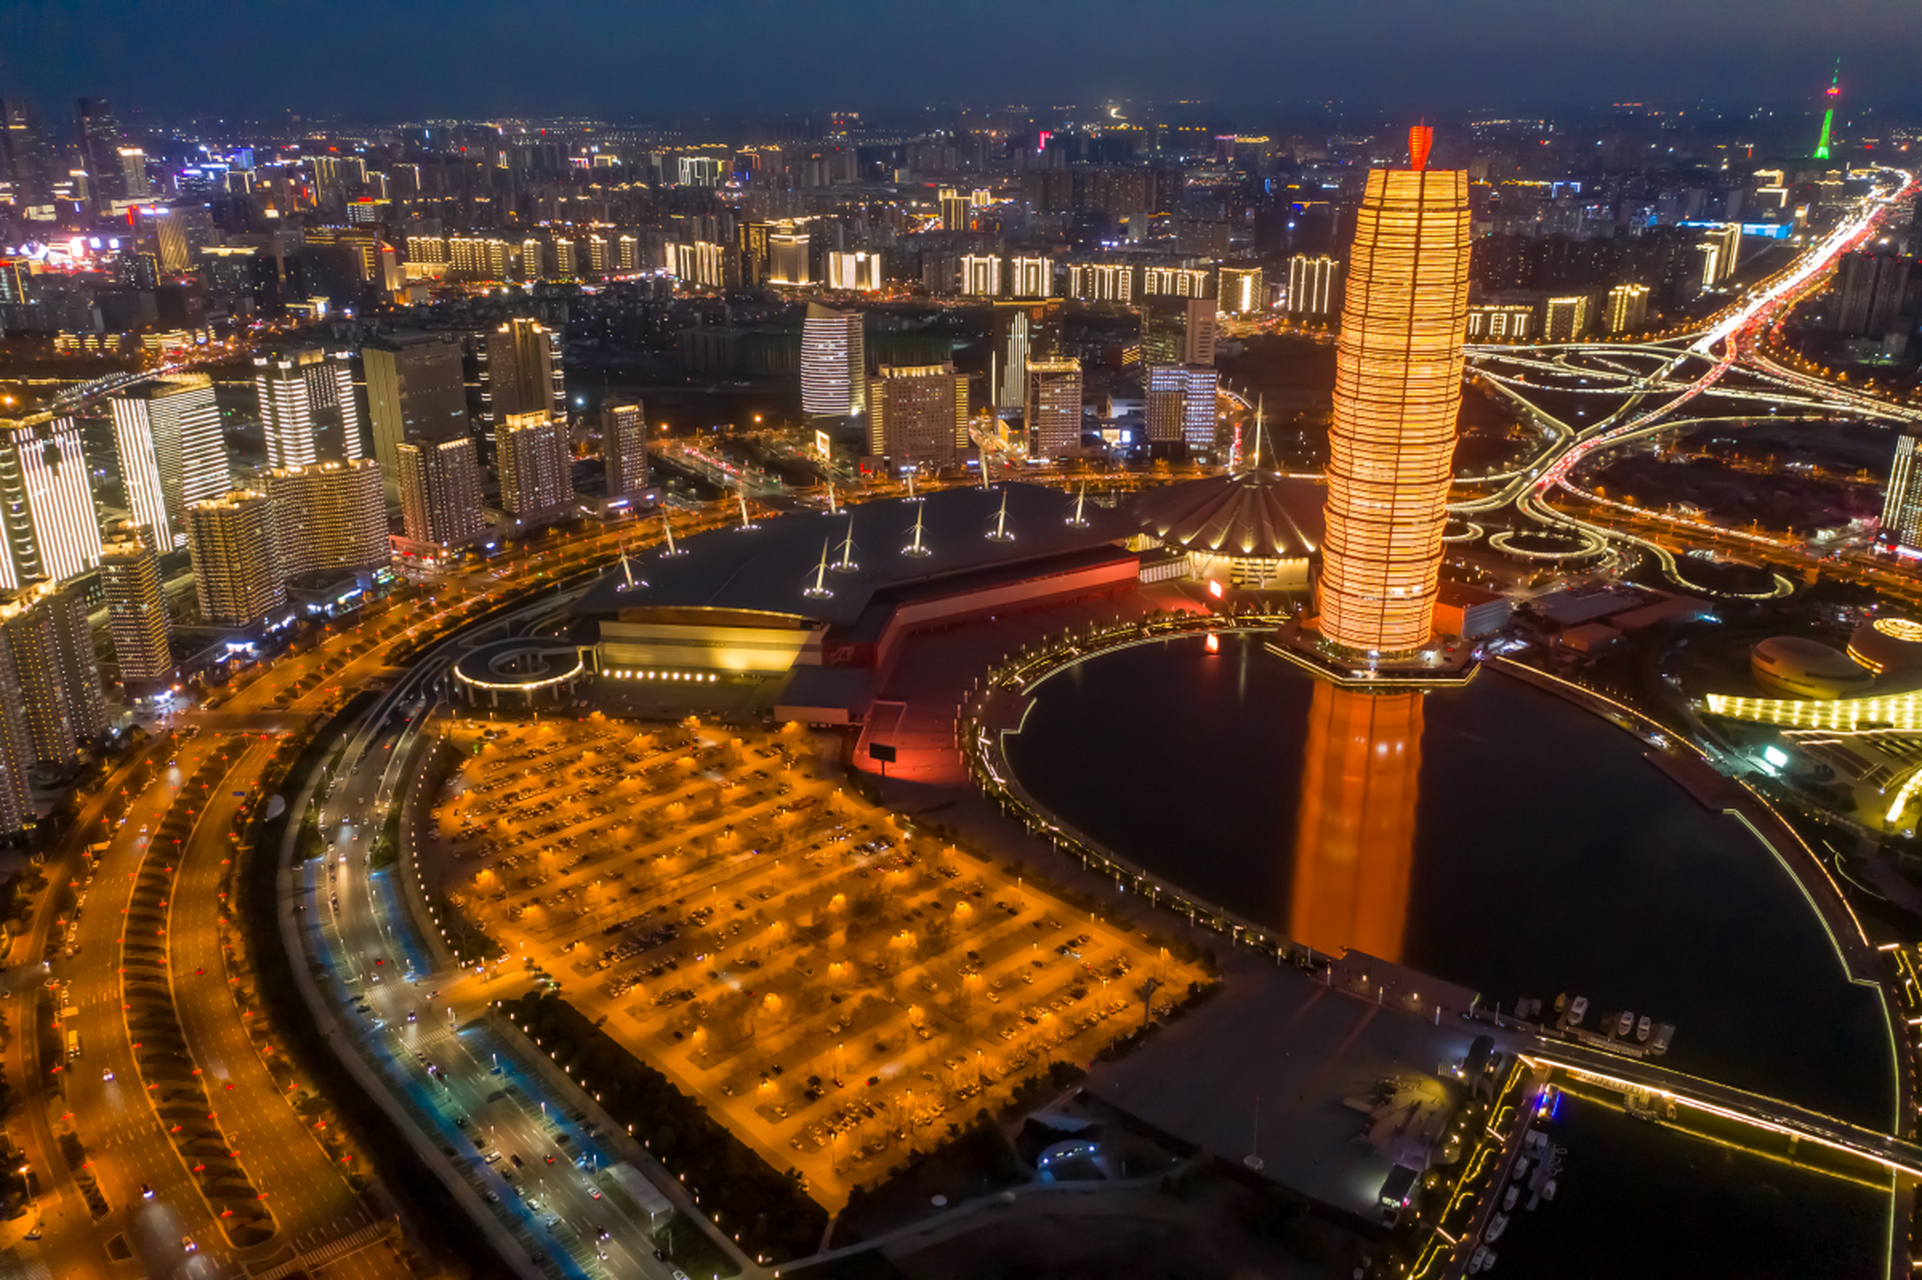 郑州千玺广场,俗称大玉米楼,郑州乃至河南最著名的地标性建筑,集